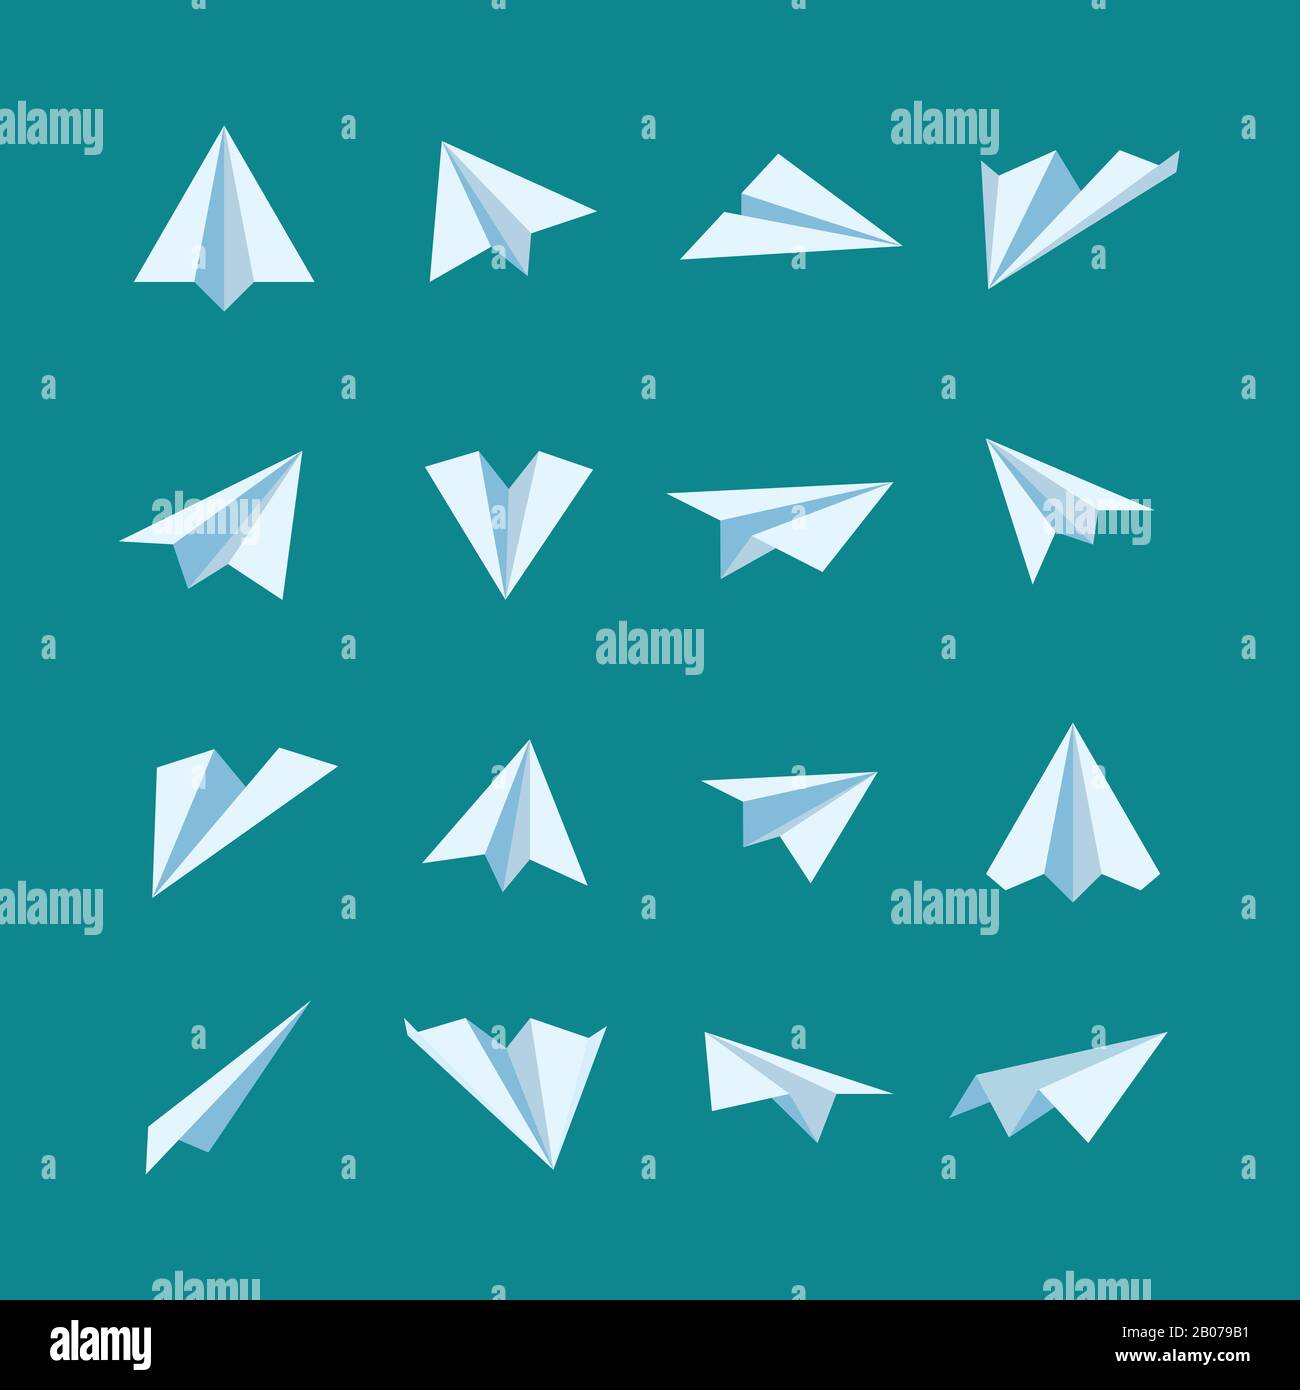 Ebene der Papierebenen - Symbole für flache Vektoren festgelegt. Origami-Flugzeug- und Papierflugzeug-Illustration Stock Vektor